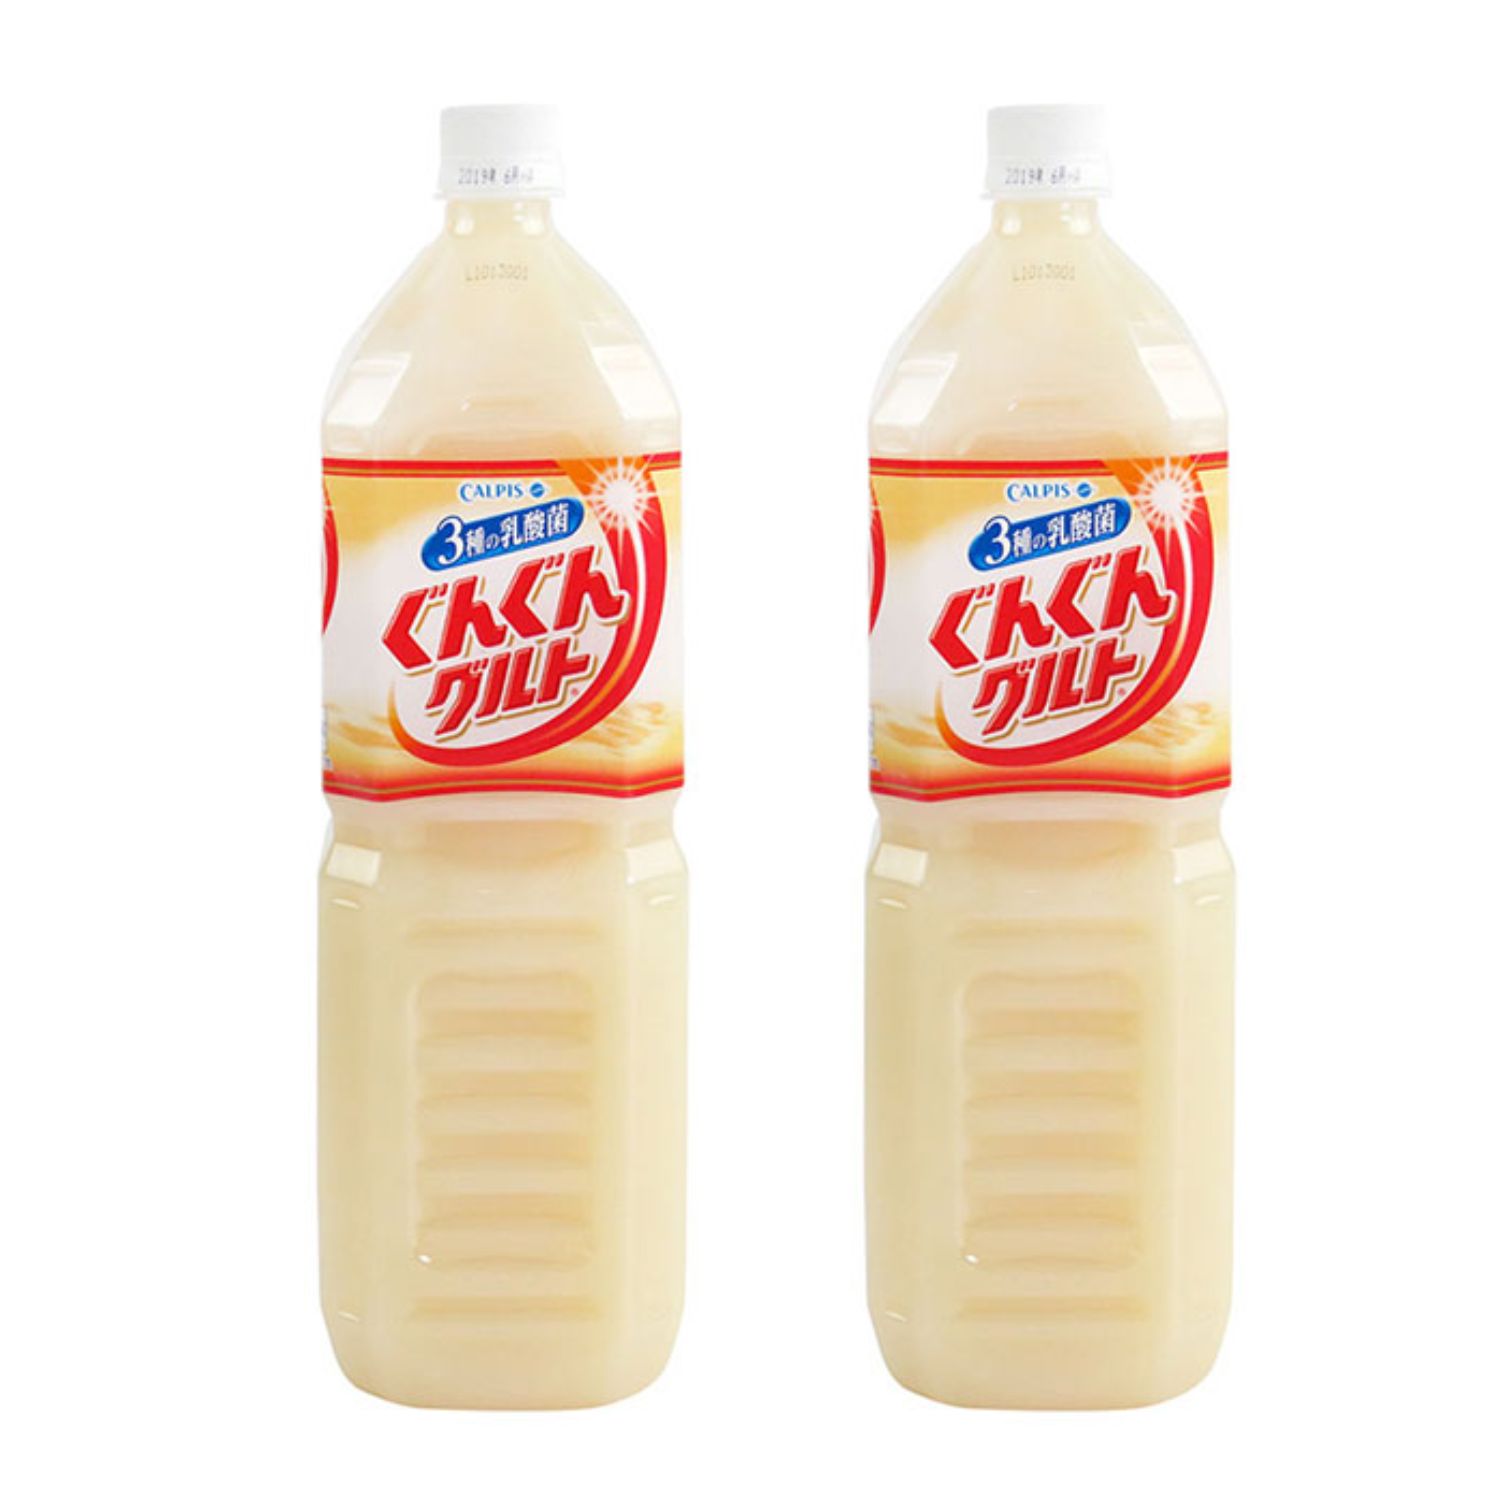 Nước sữa chua uống Calpis Asahi bổ sung lợi khuẩn 1.5L